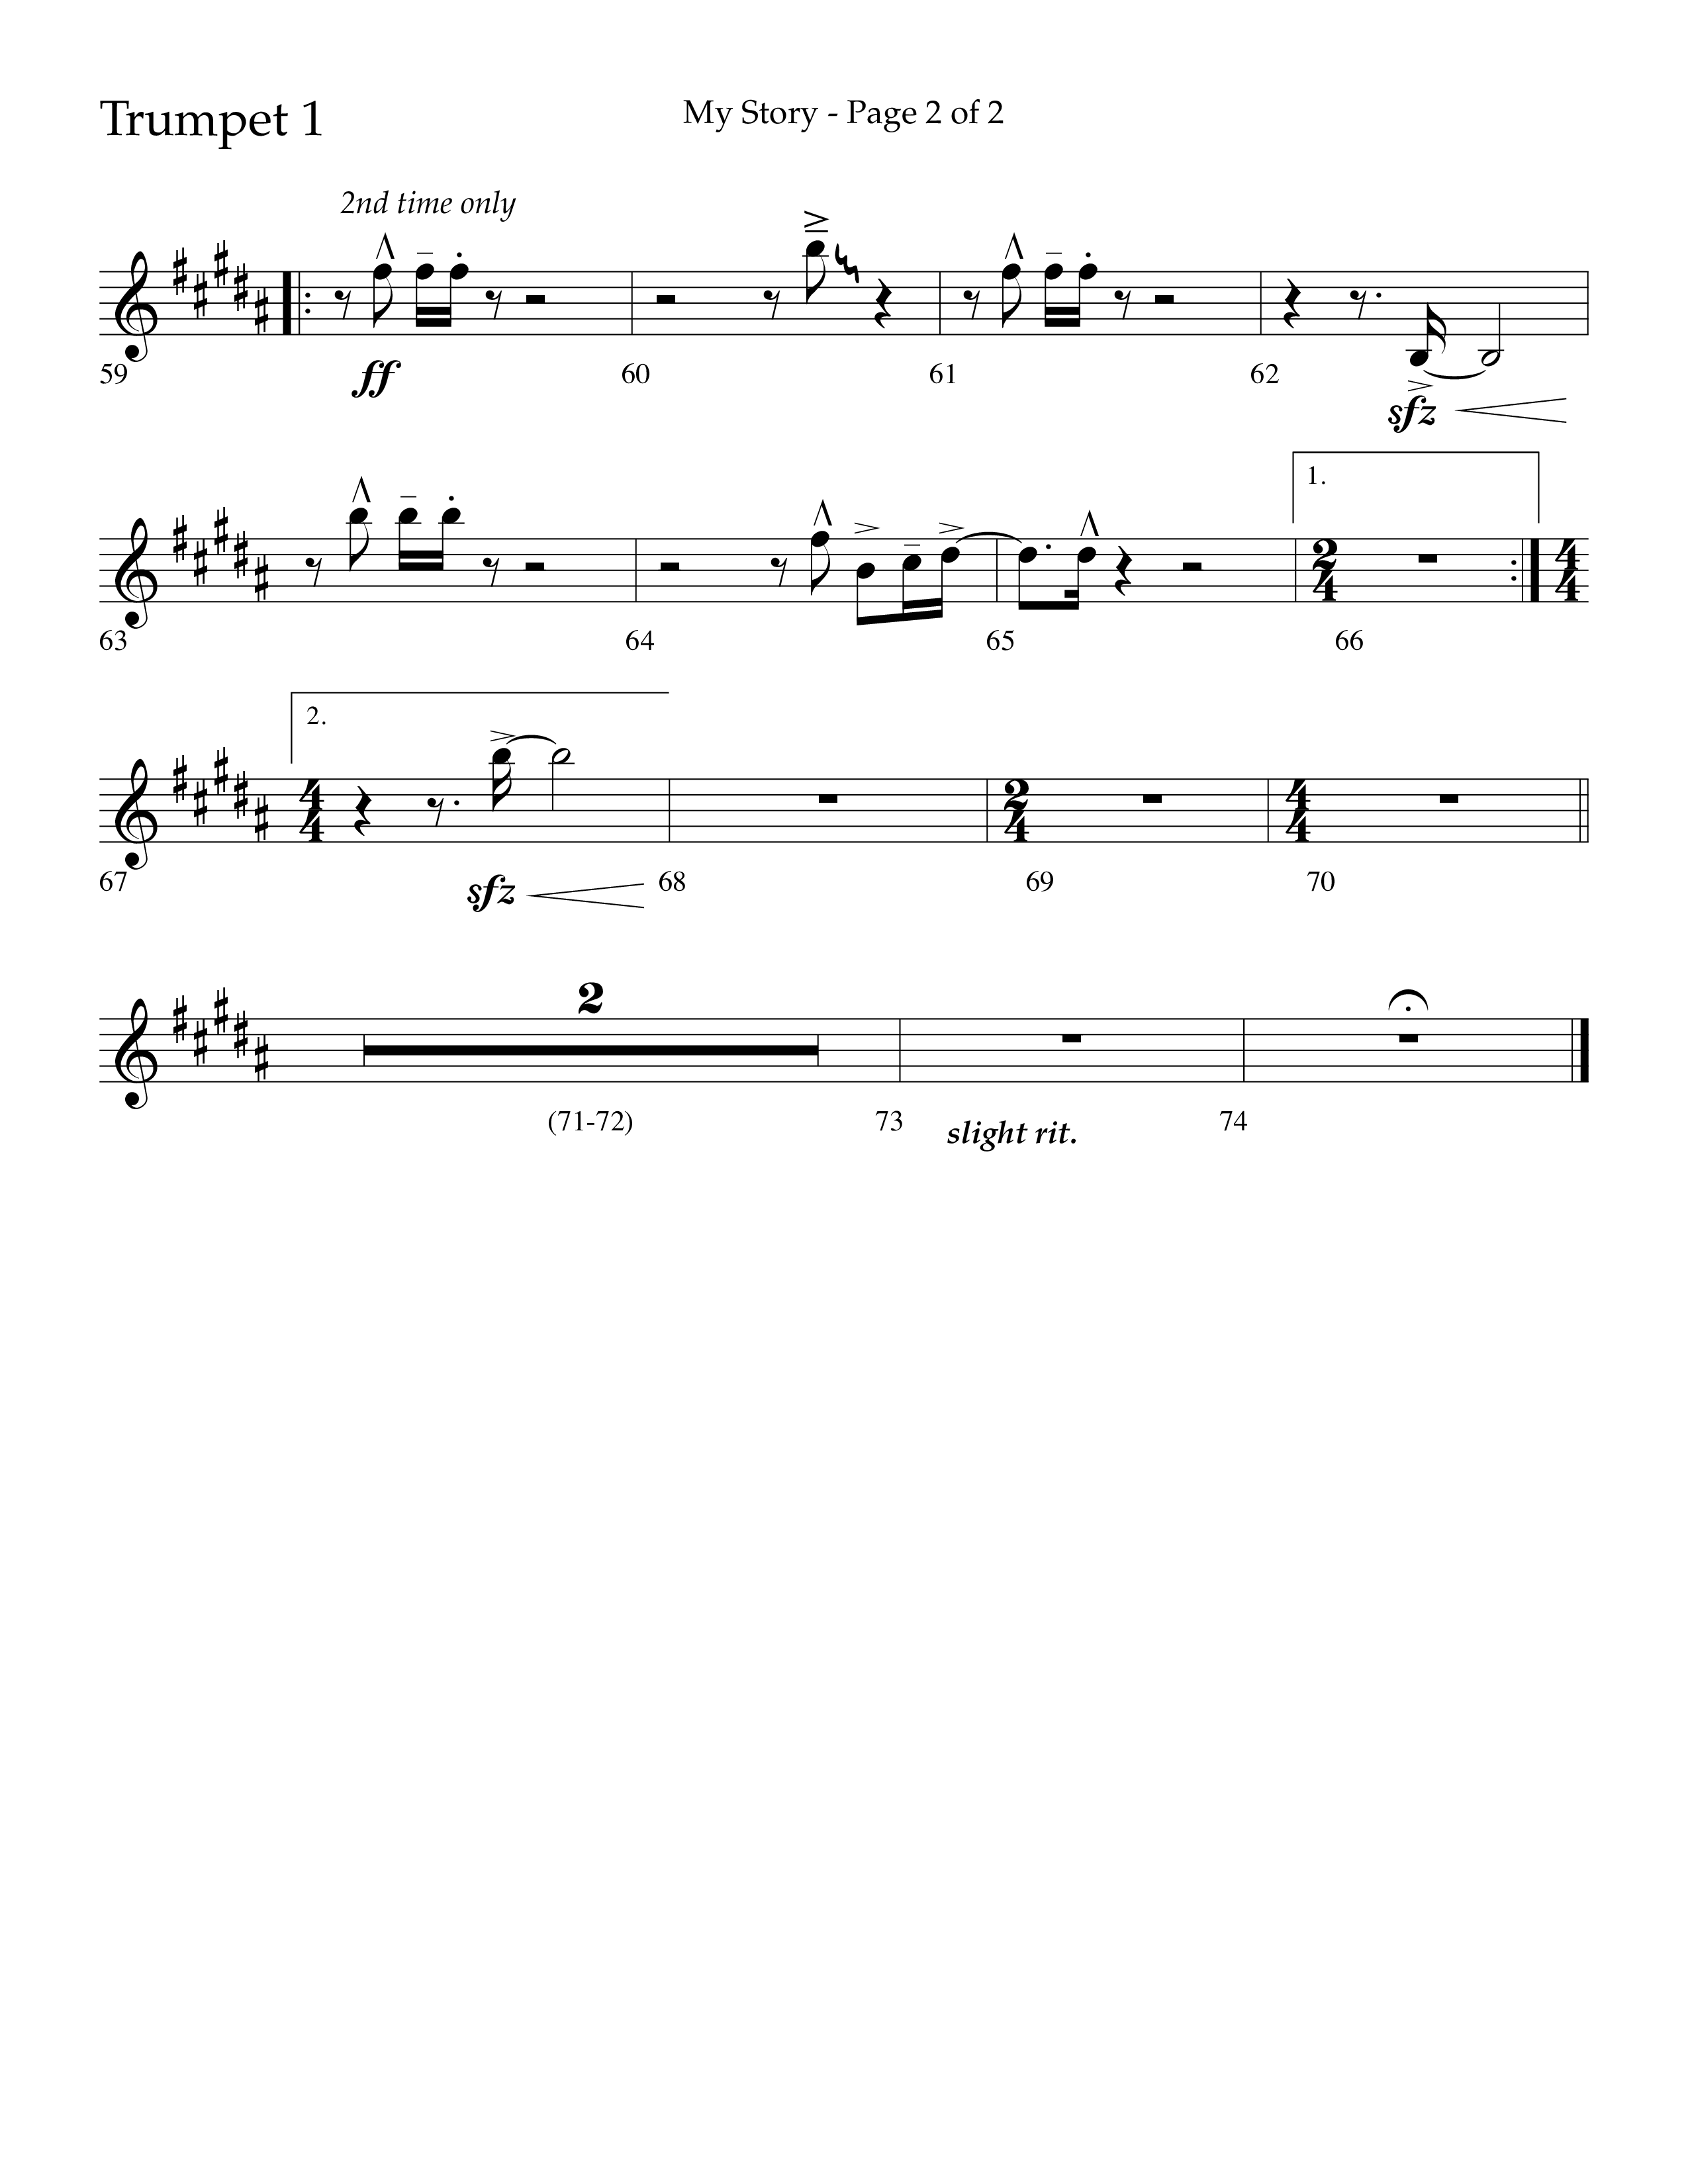 My Story (Choral Anthem SATB) Trumpet 1 (Lifeway Choral / Arr. Craig Adams)